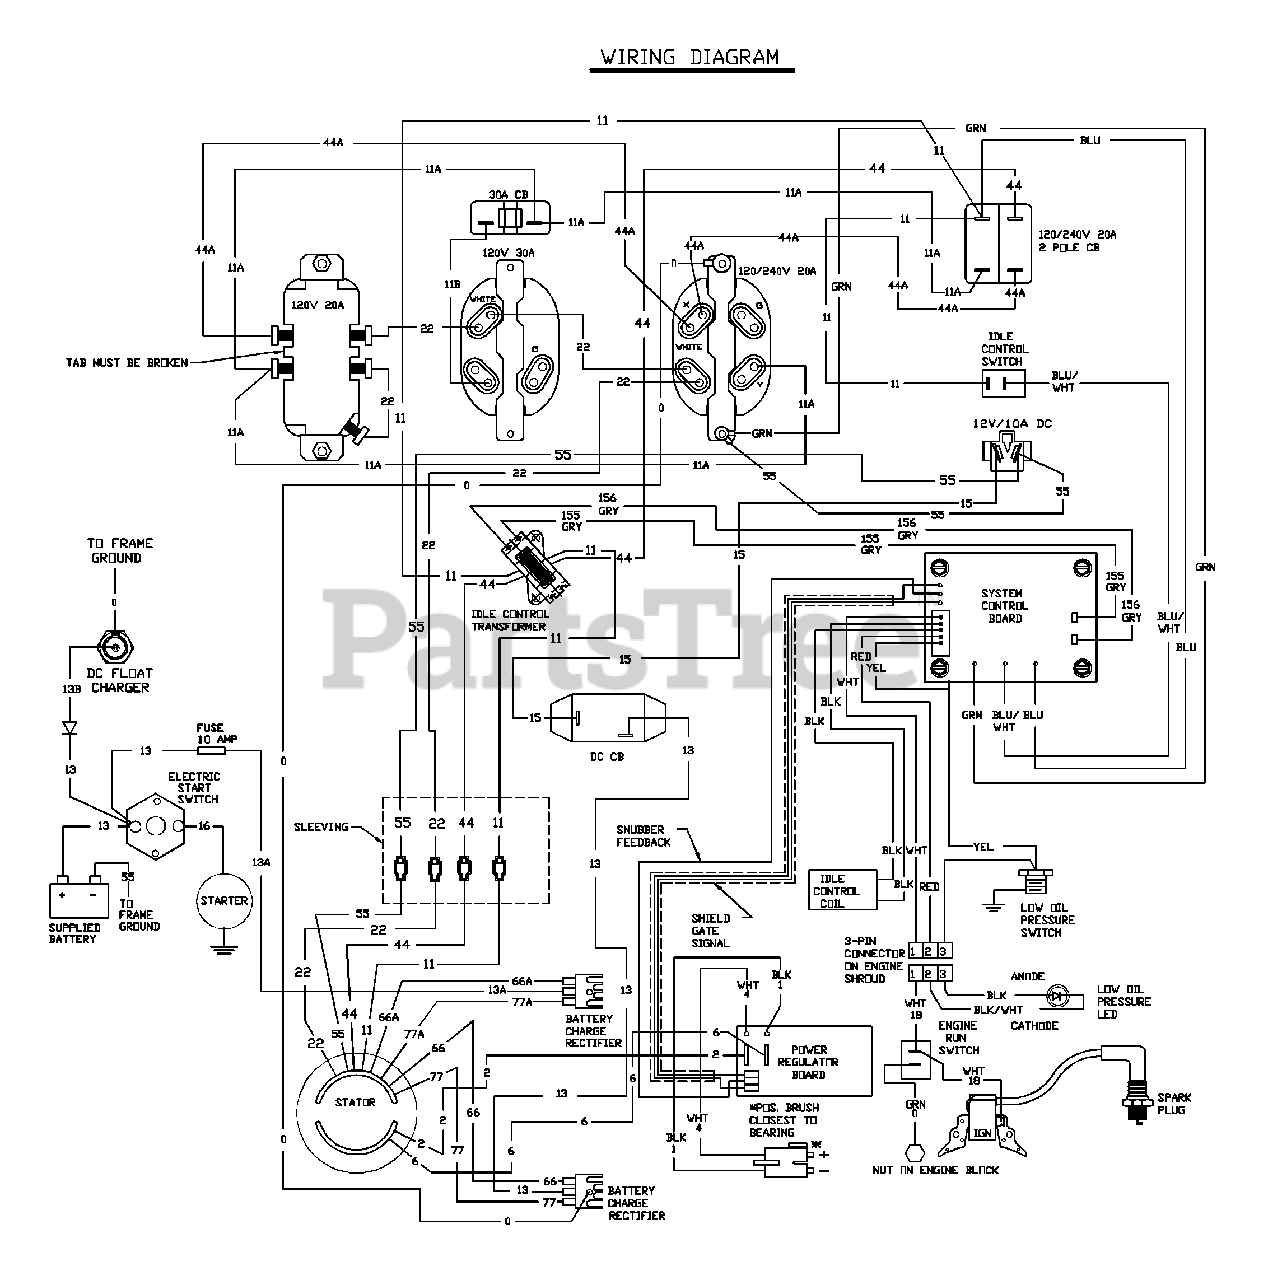 Generac 1656-1 - Generac 4,000 Watt Portable Generator Wiring Diagram ...